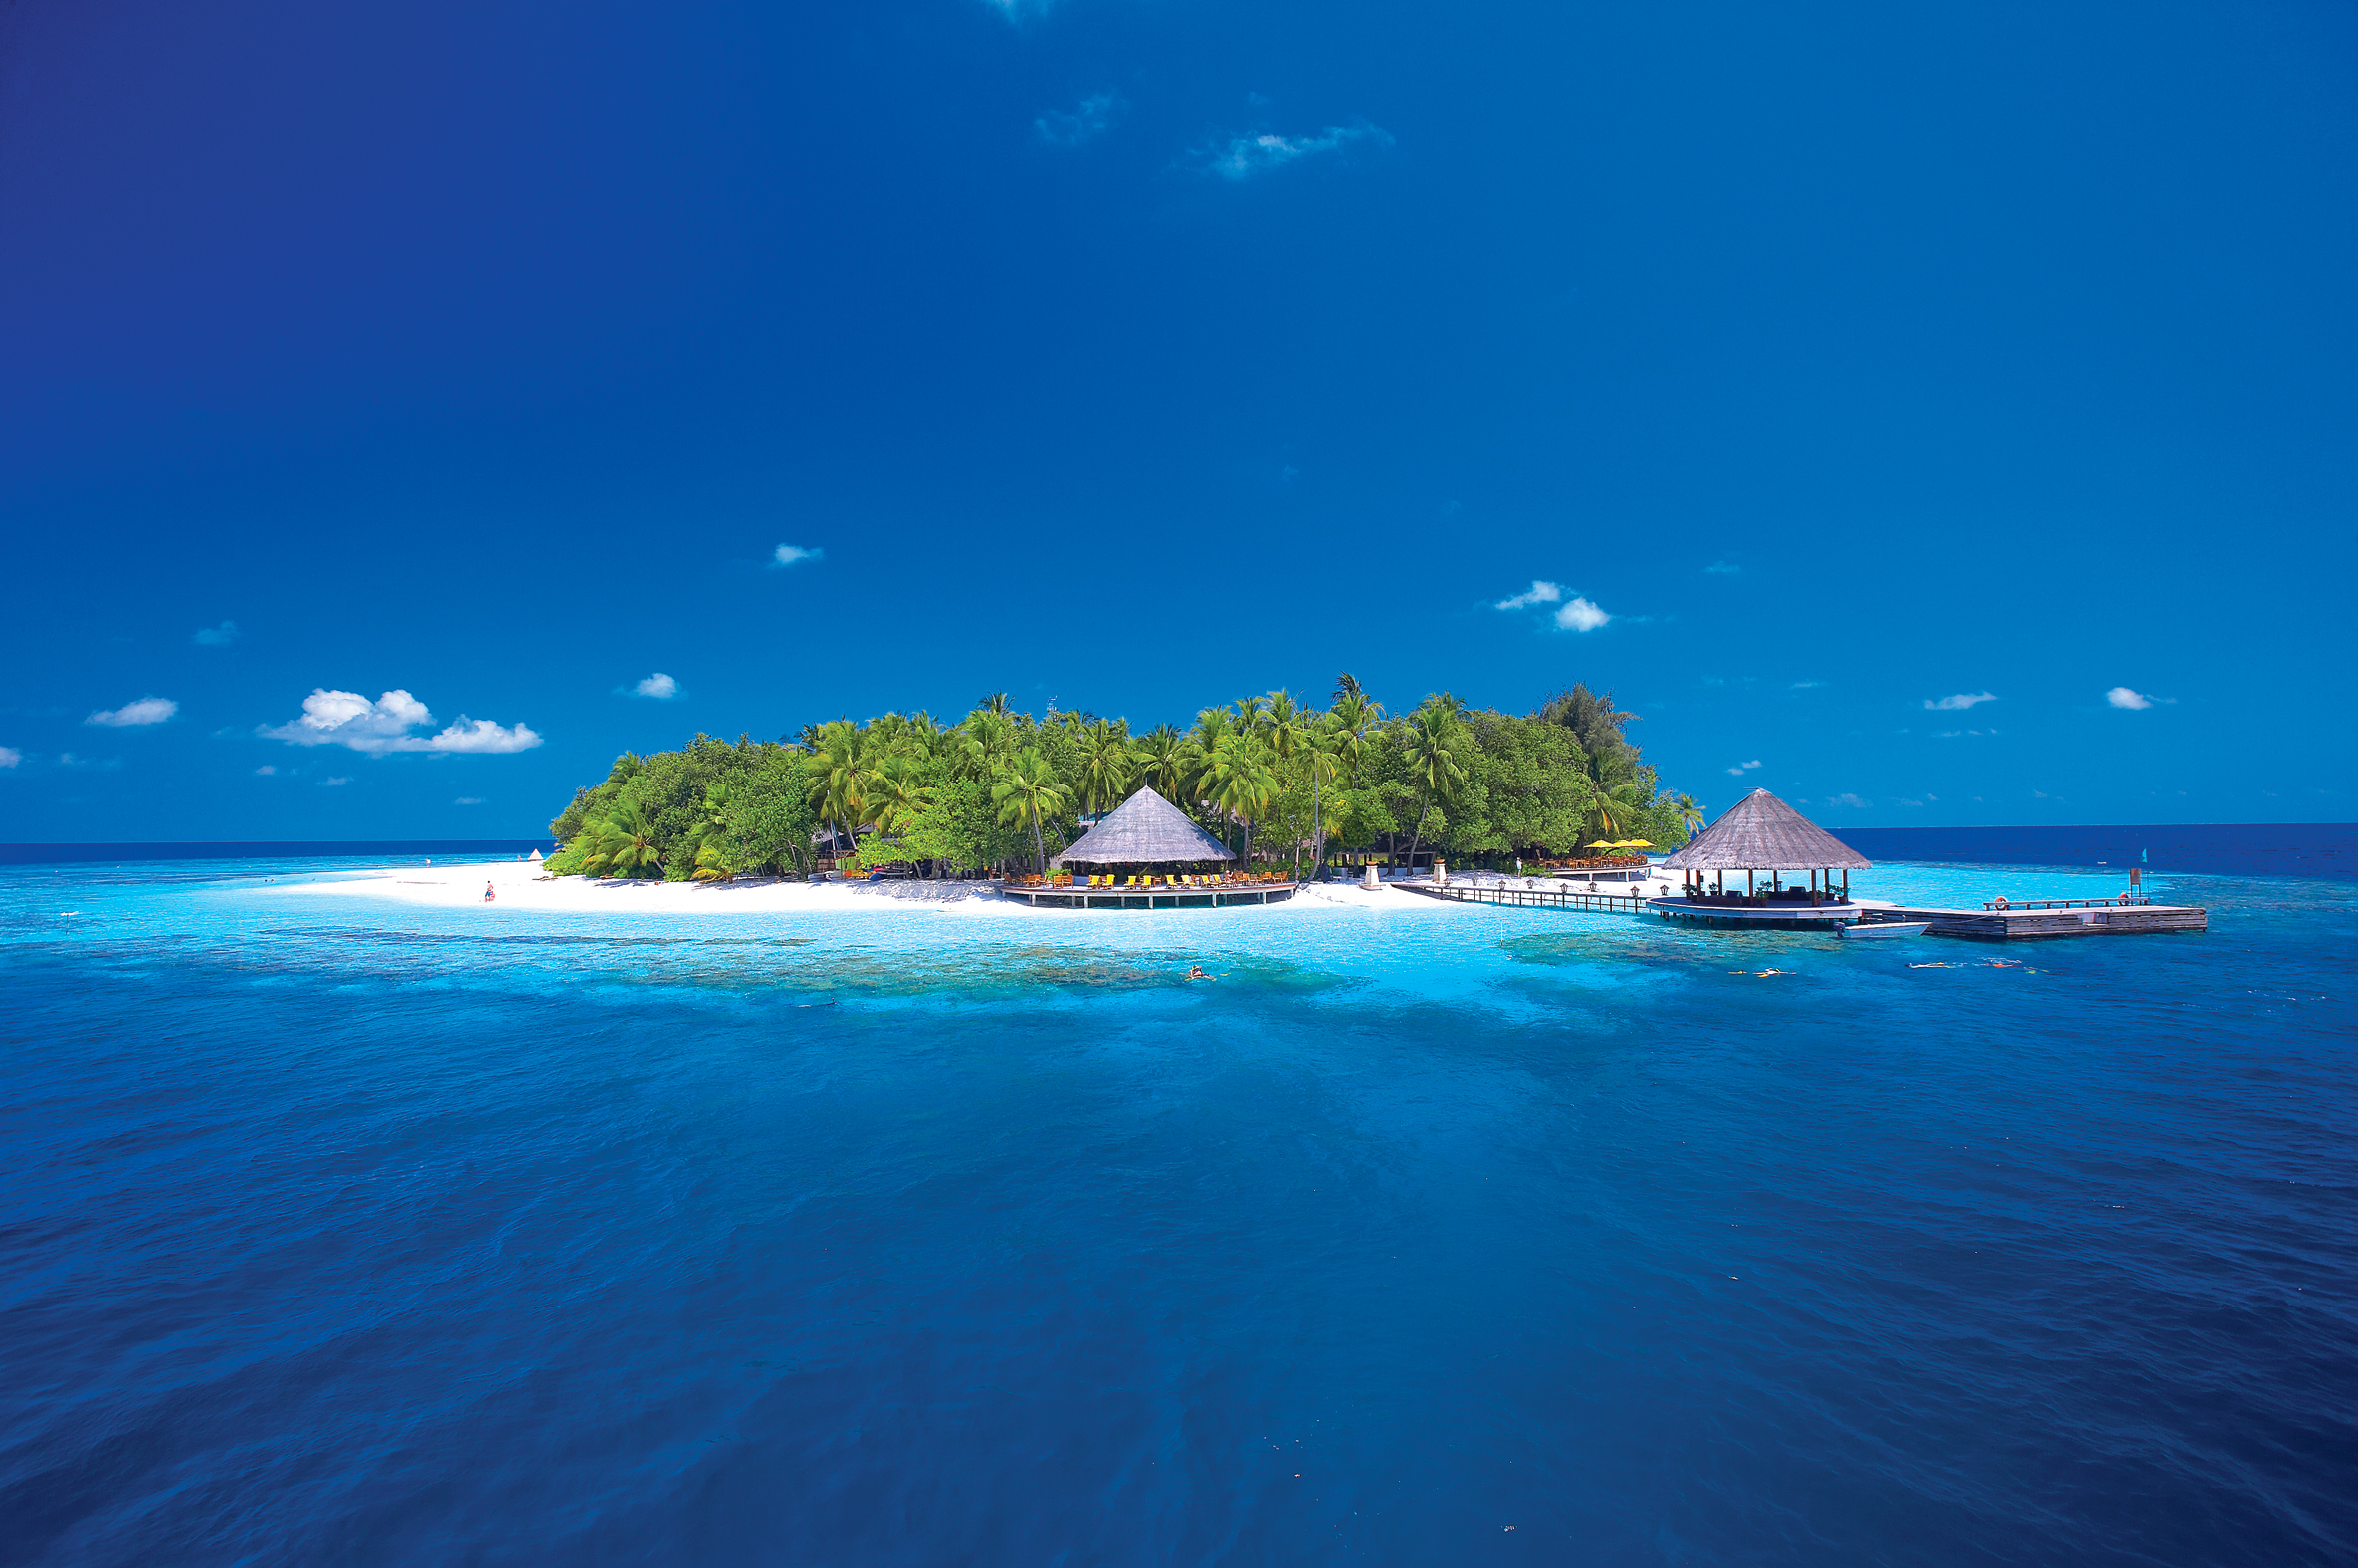 Mỗi resort ở Maldives mang một phong cách riêng - Ảnh: Angsana Ihuru